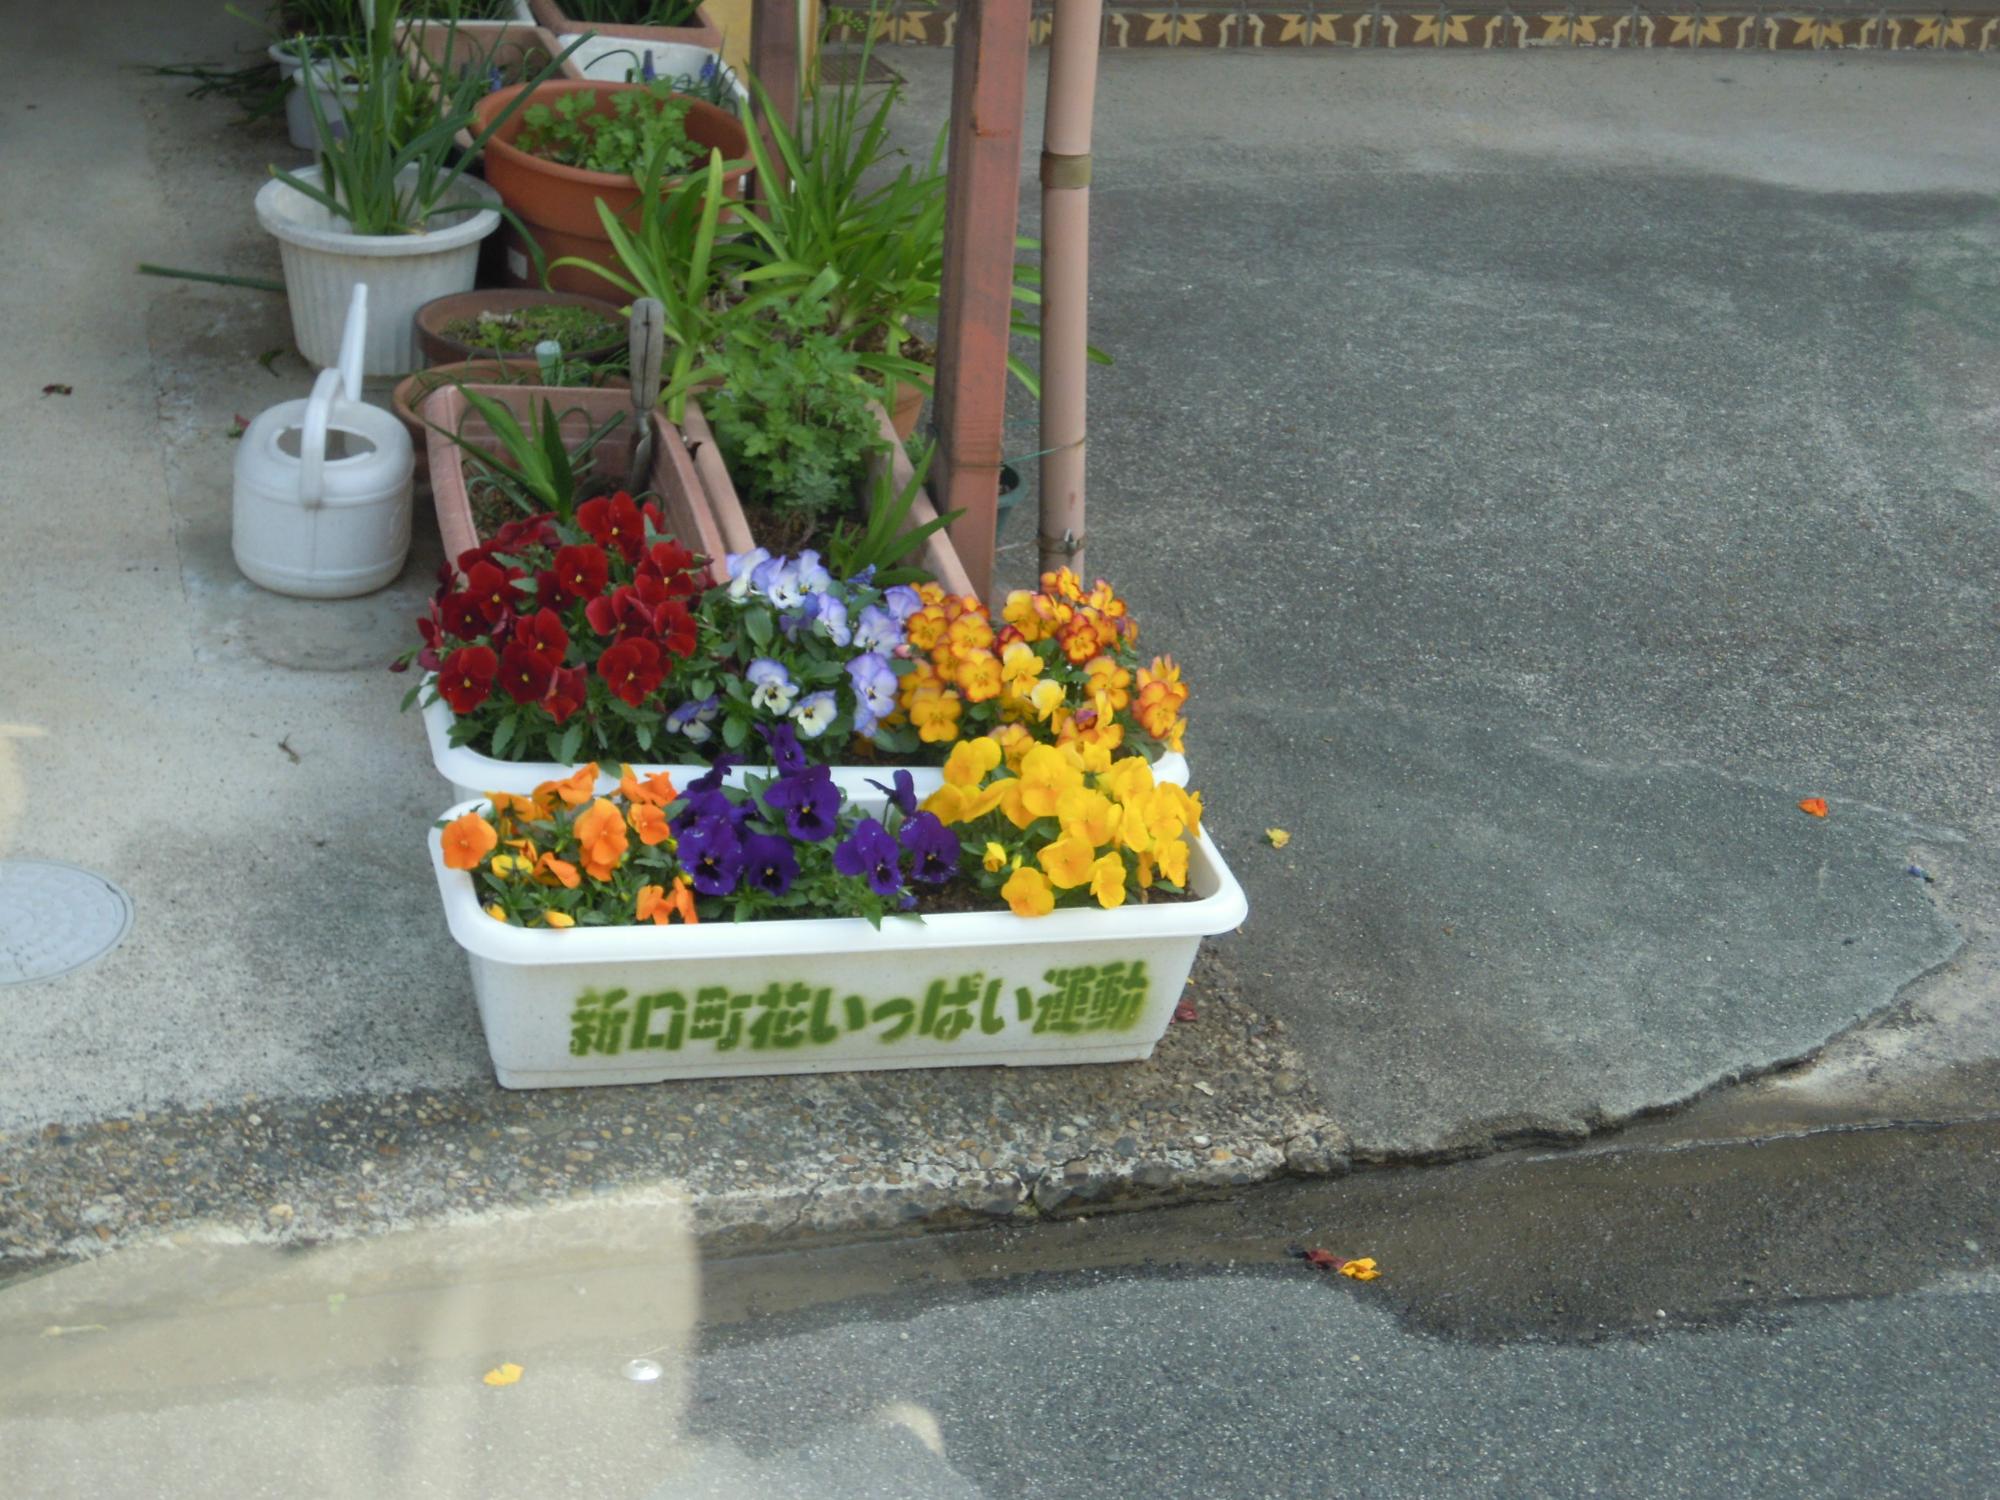 色とりどりの花が咲いている「新口町花いっぱい運動」と書いてある植木鉢2つといろいろな草が生えている植木鉢7つの写真